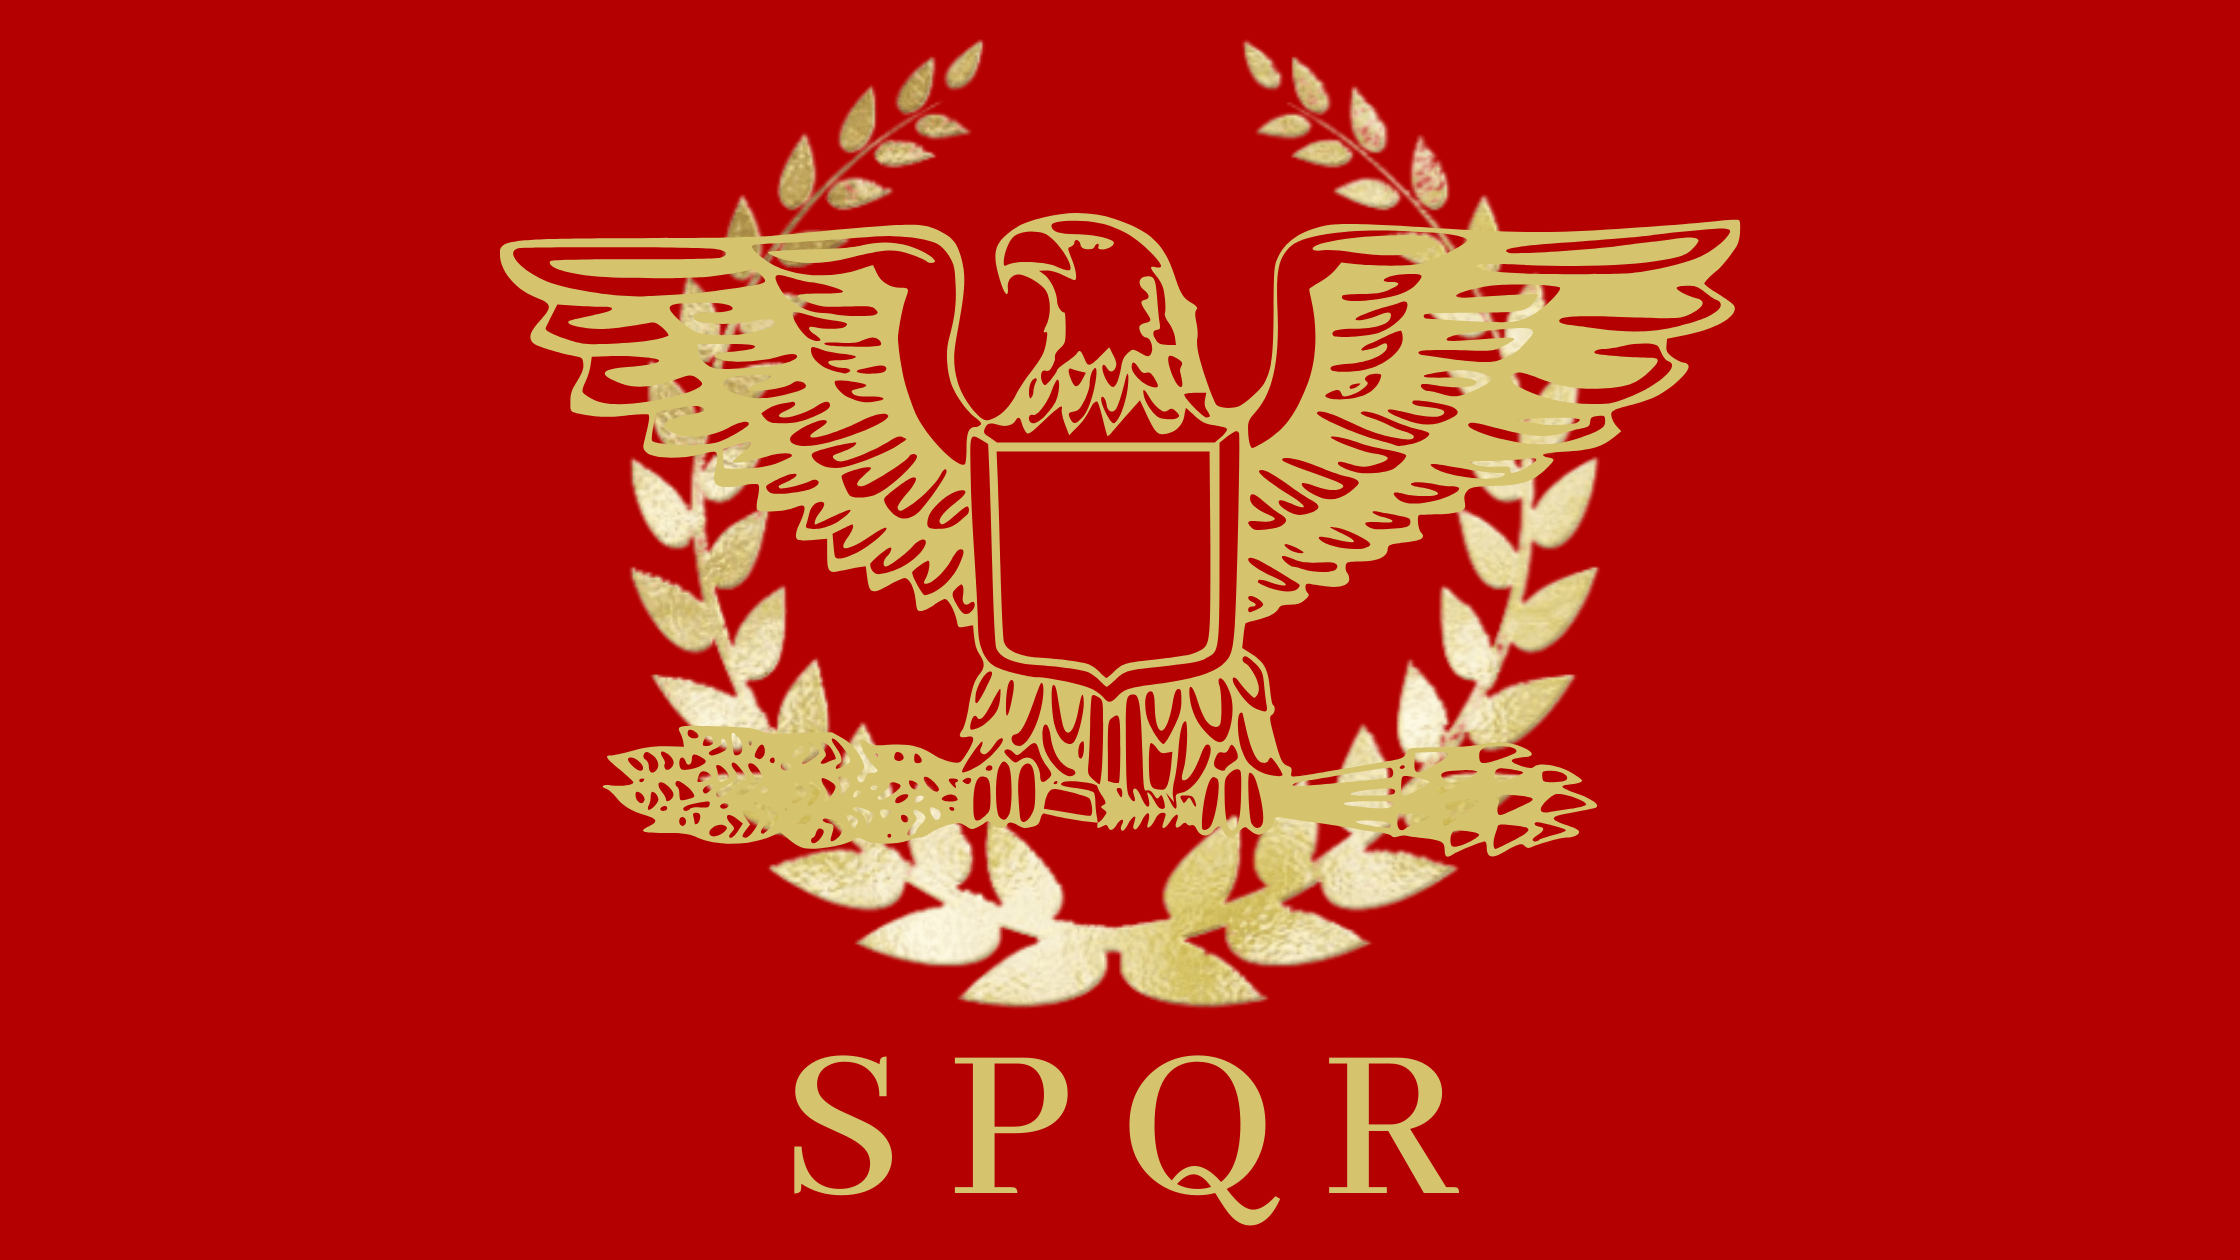 Romeinse vlag: SPQR, feiten en geschiedenis